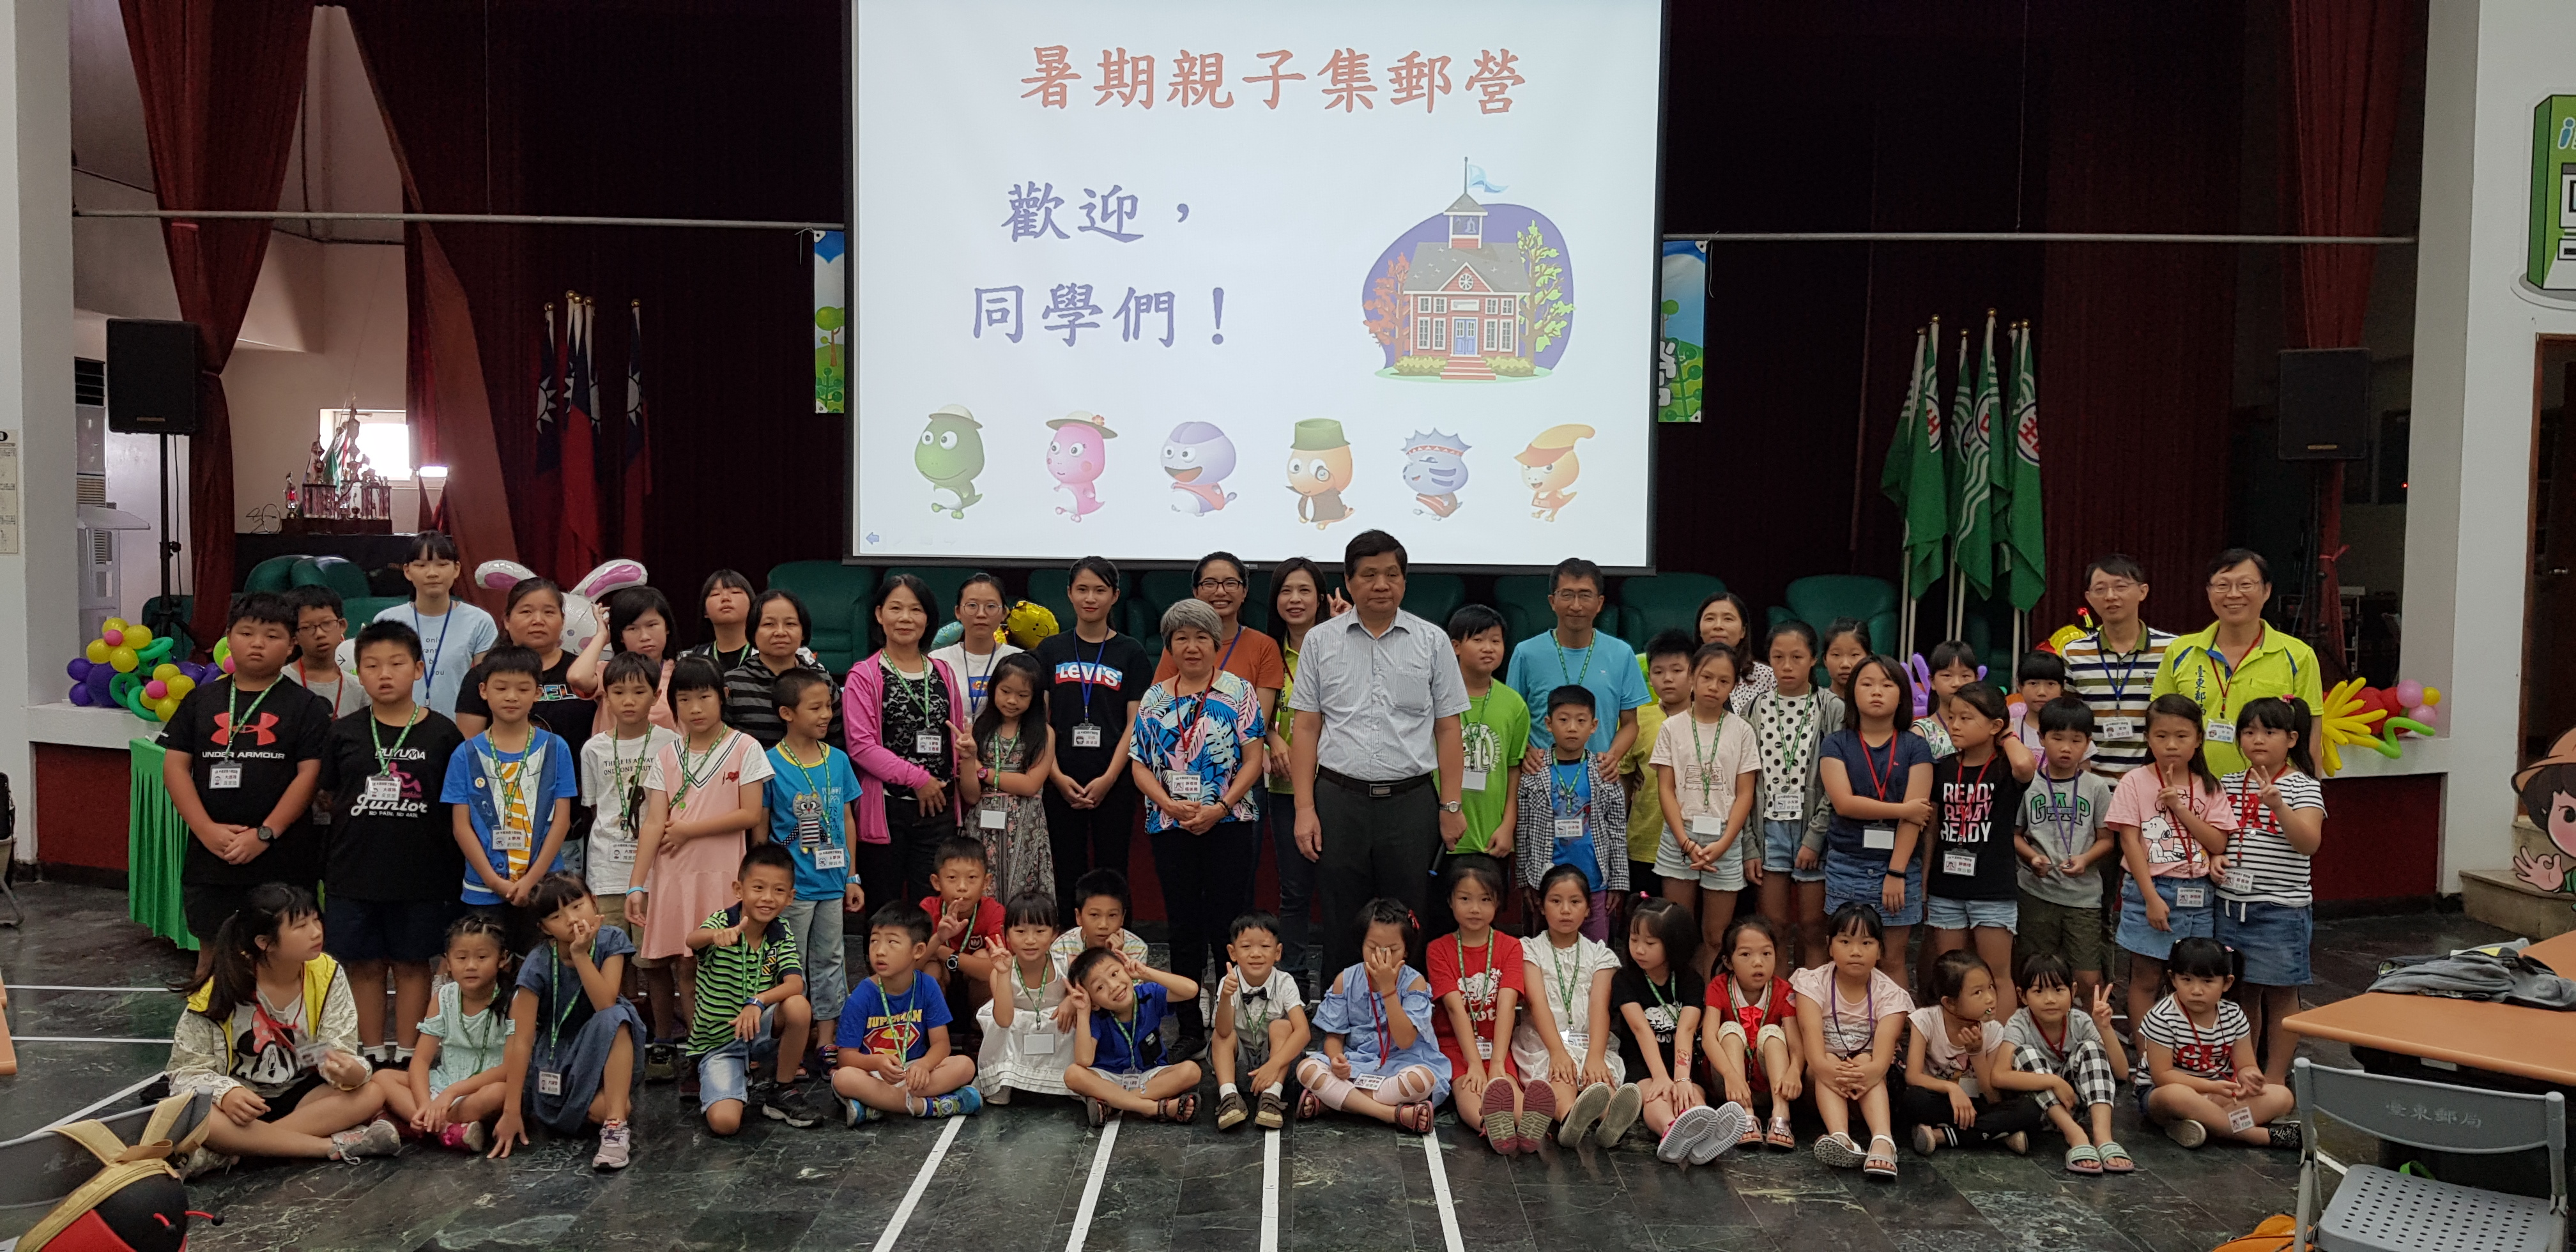 臺東郵局舉辦「108年暑期親子集郵研習營」 